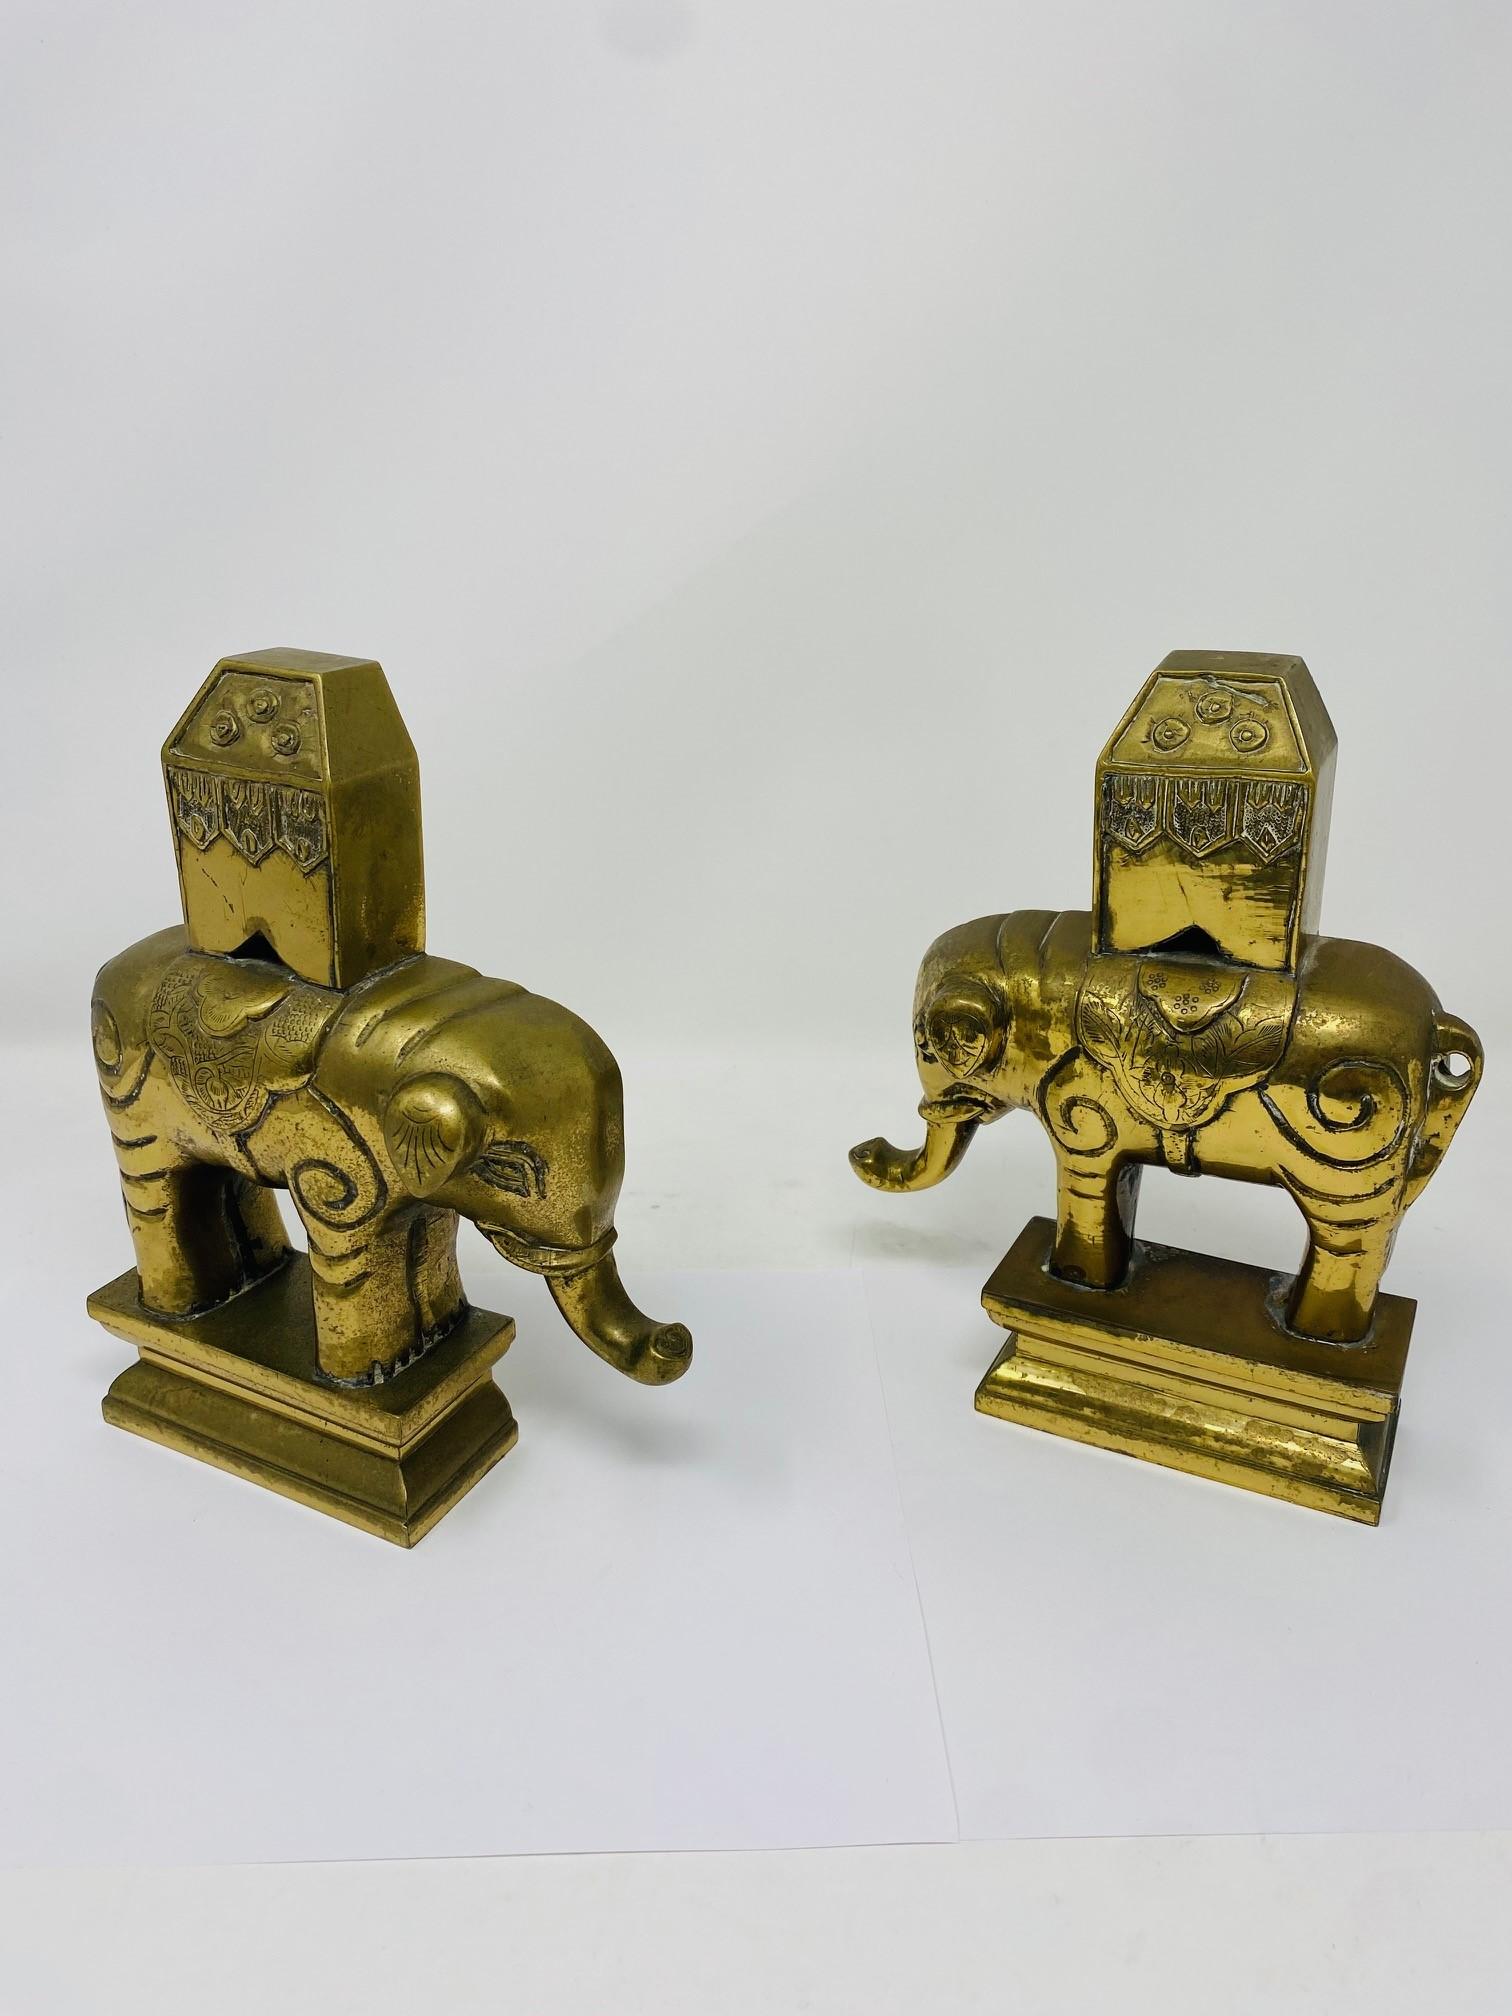 Magnifique et unique paire de serre-livres sculpturaux en laiton en forme d'éléphant.  Cette magnifique paire date des années 1940.  La paire solidement sculptée pèse 5,1 livres chacune, ce qui rend cette paire non seulement incroyablement belle